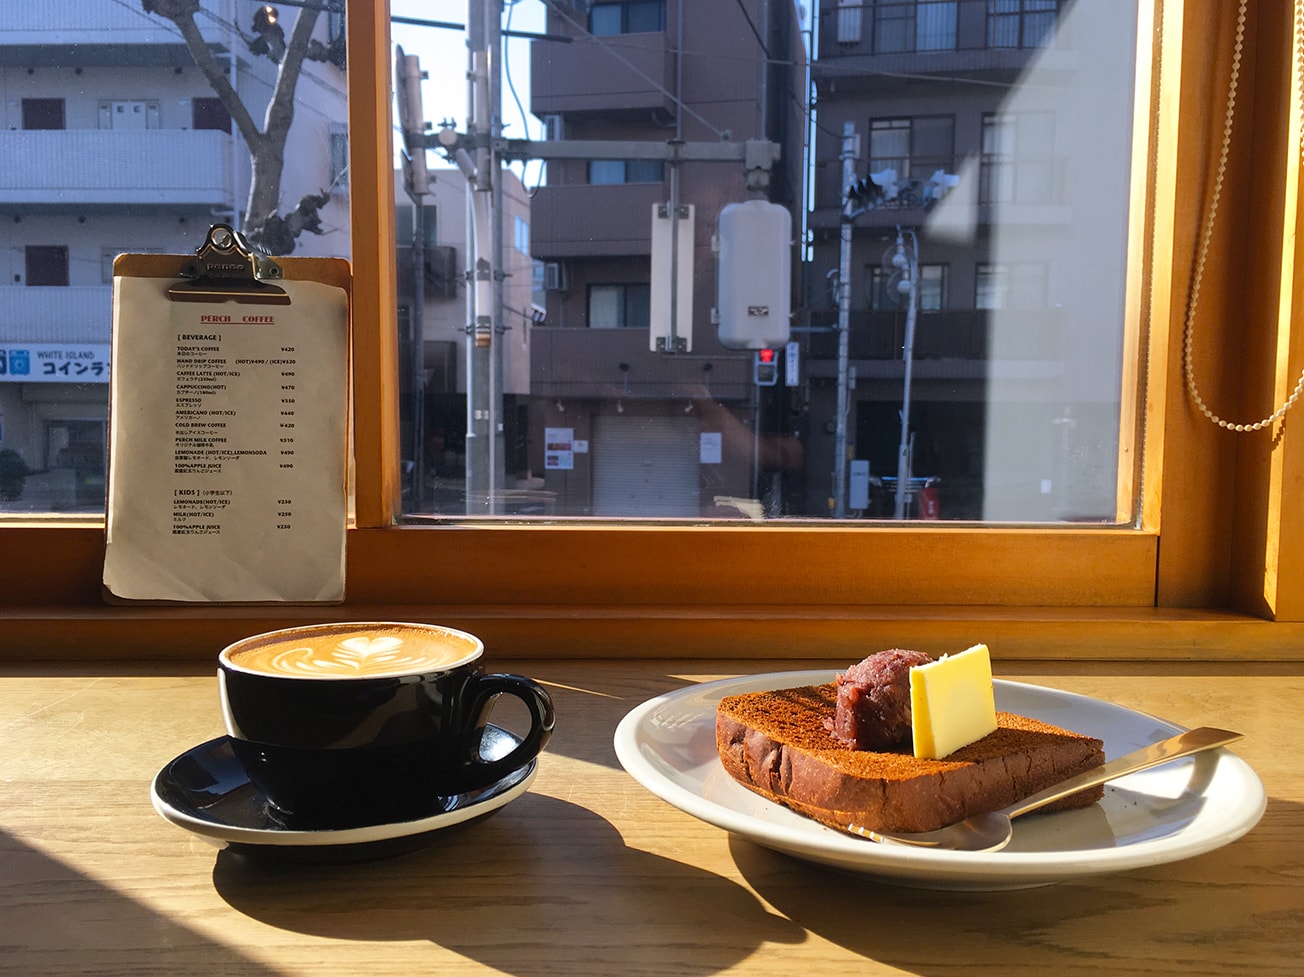 旅カフェ 川崎 蒲田 大森のカフェ巡りの記録 19年2月23 24日 A Day In The Cafe 札幌でカフェ のある暮らしを楽しむメディア